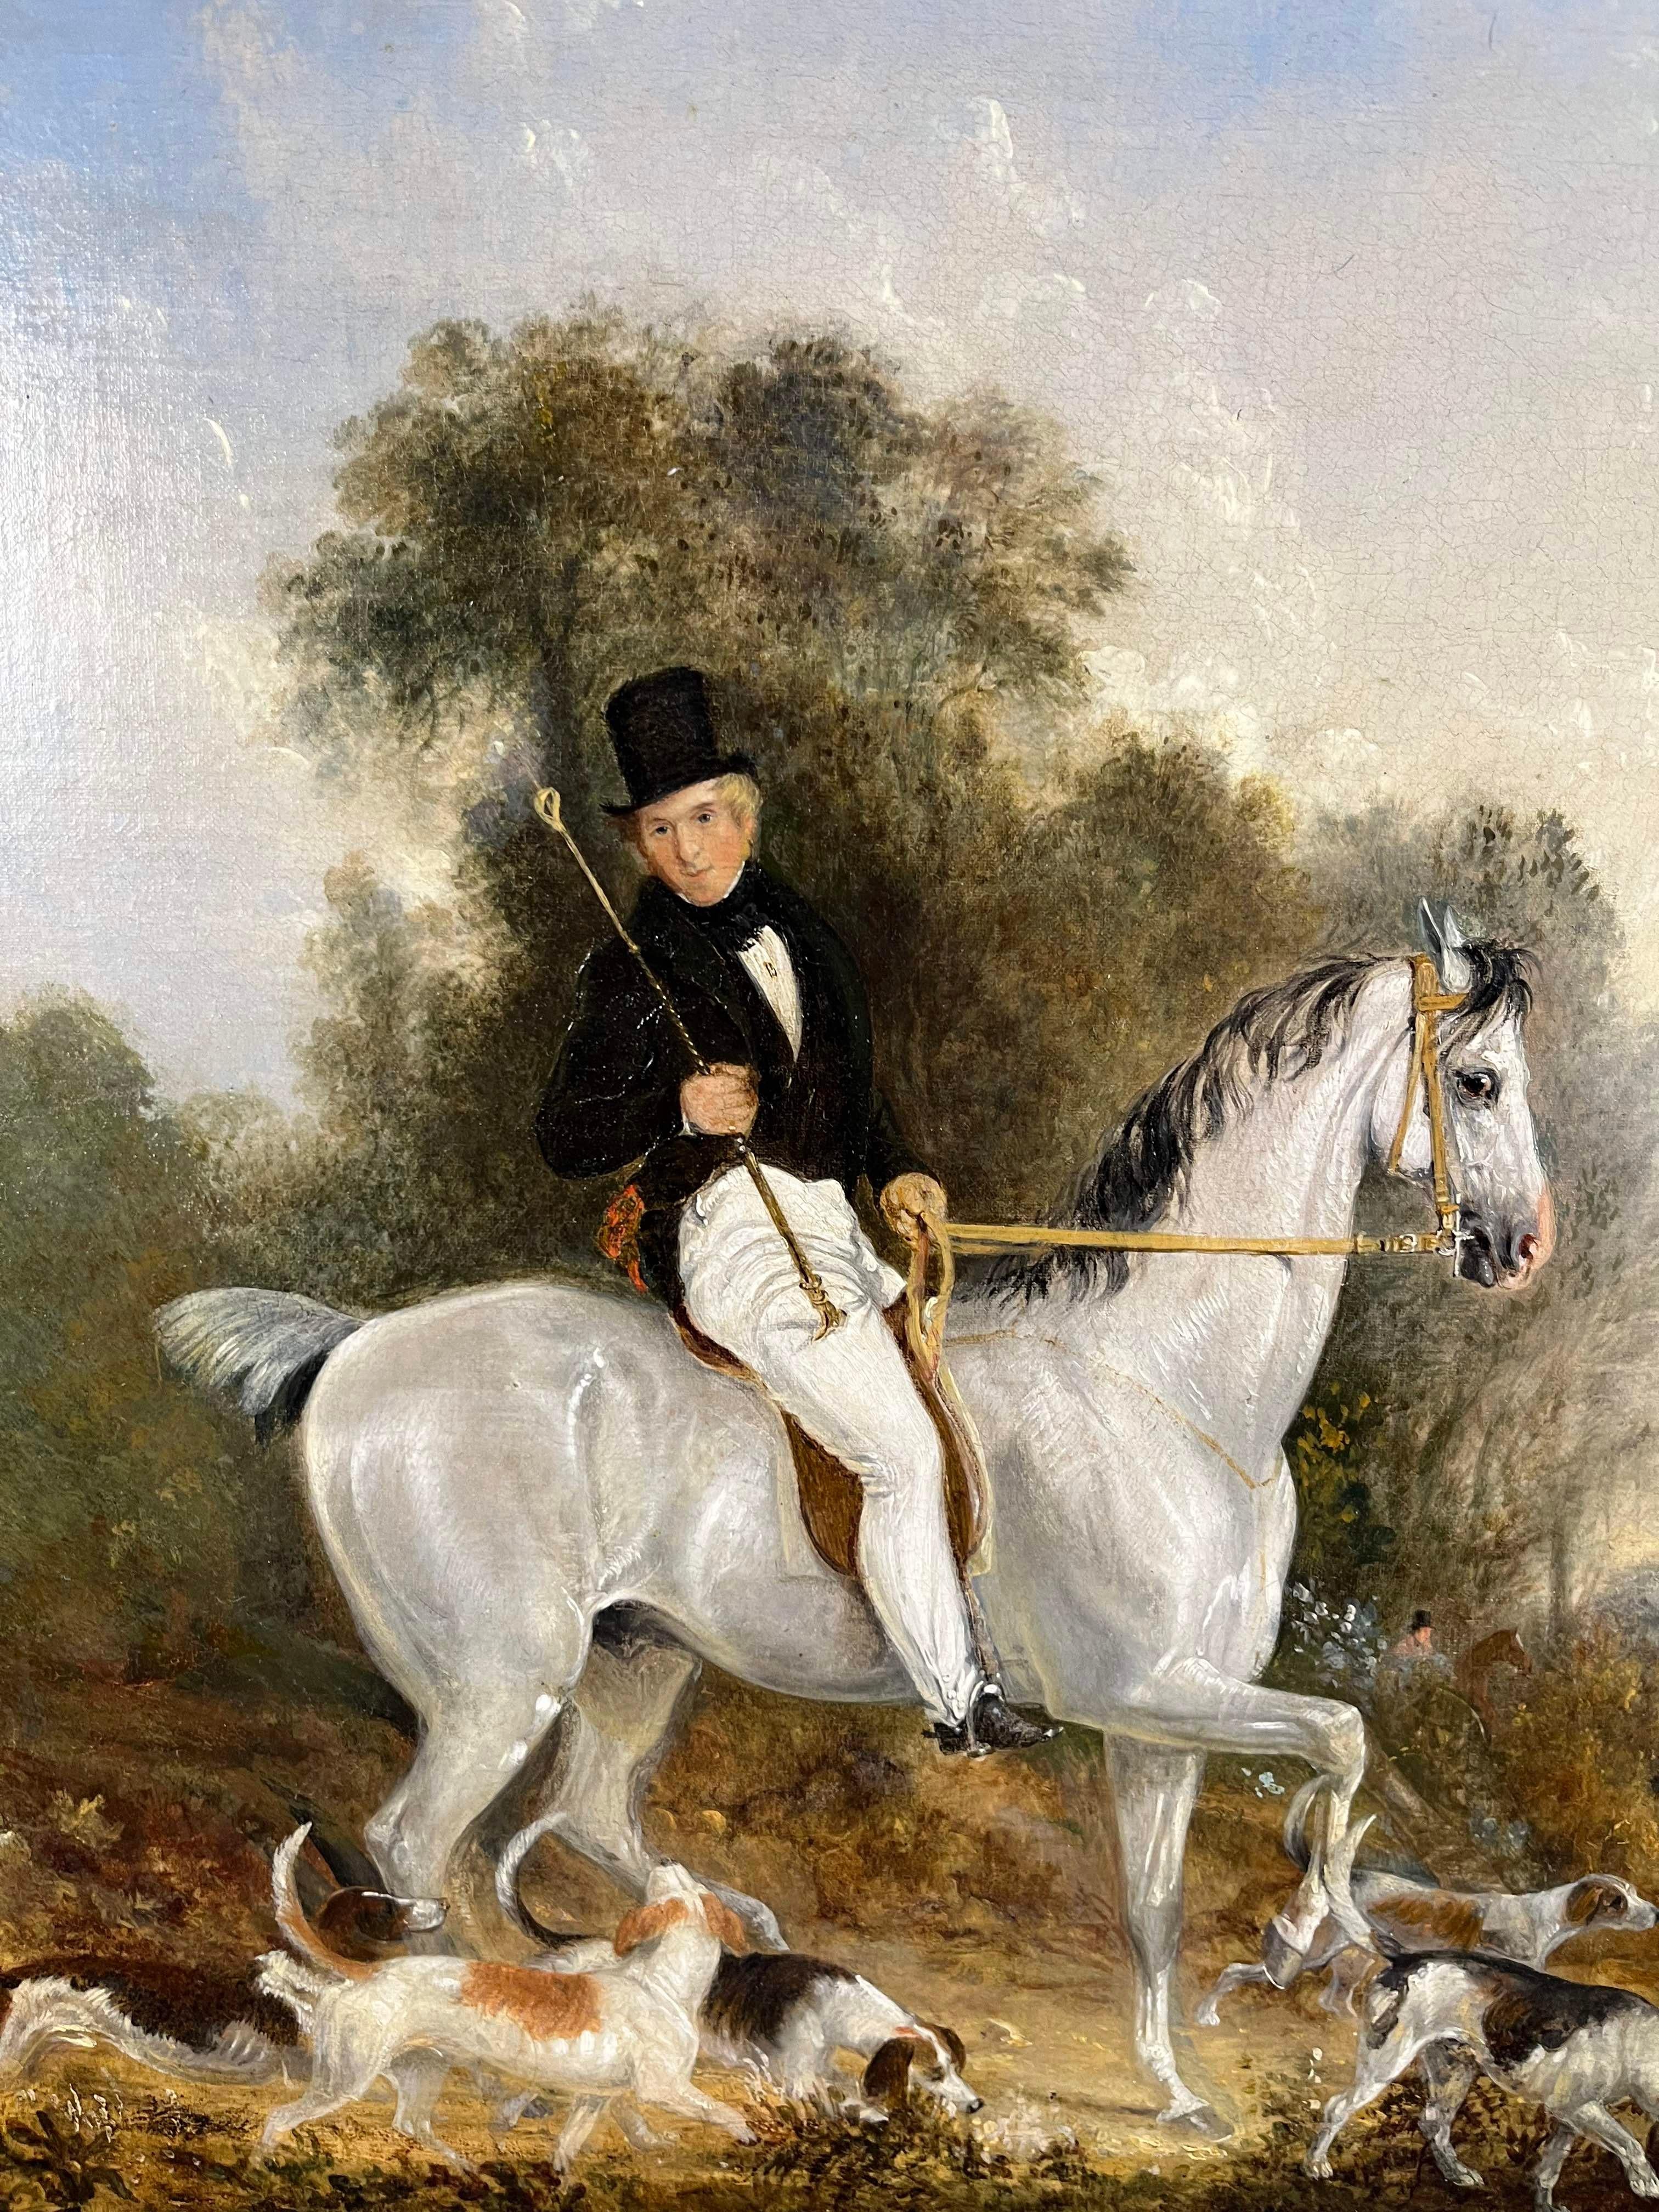 Richard Barrett Davis (1782-1854)
M. Ward sur Quicksilver
Huile sur toile
Taille de la toile - 25 x 30 pouces

Provenance
avec Ackermann & Son, Londres ;
où il a été acheté par le propriétaire actuel. 

Né à Watford, ce peintre était le fils d'un